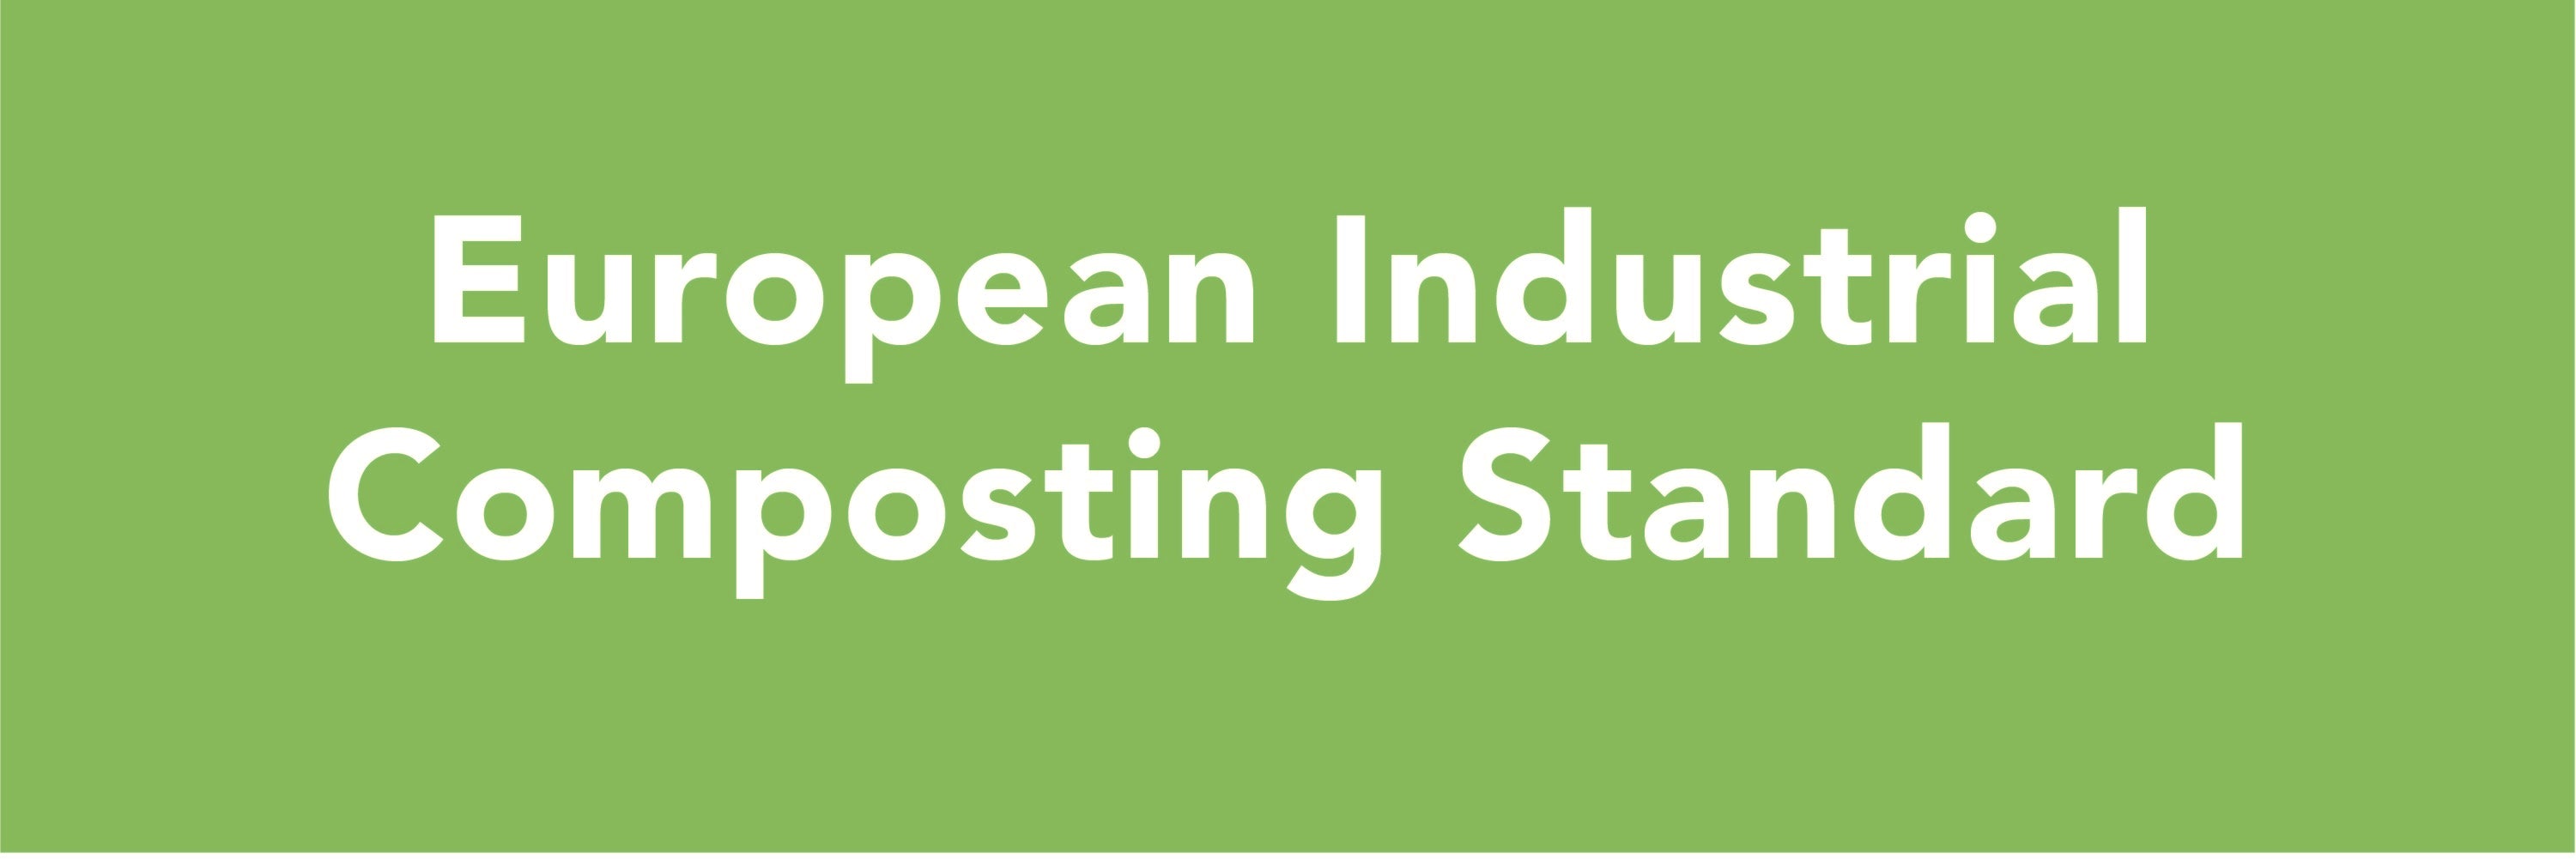 European Industrial Composting Standard